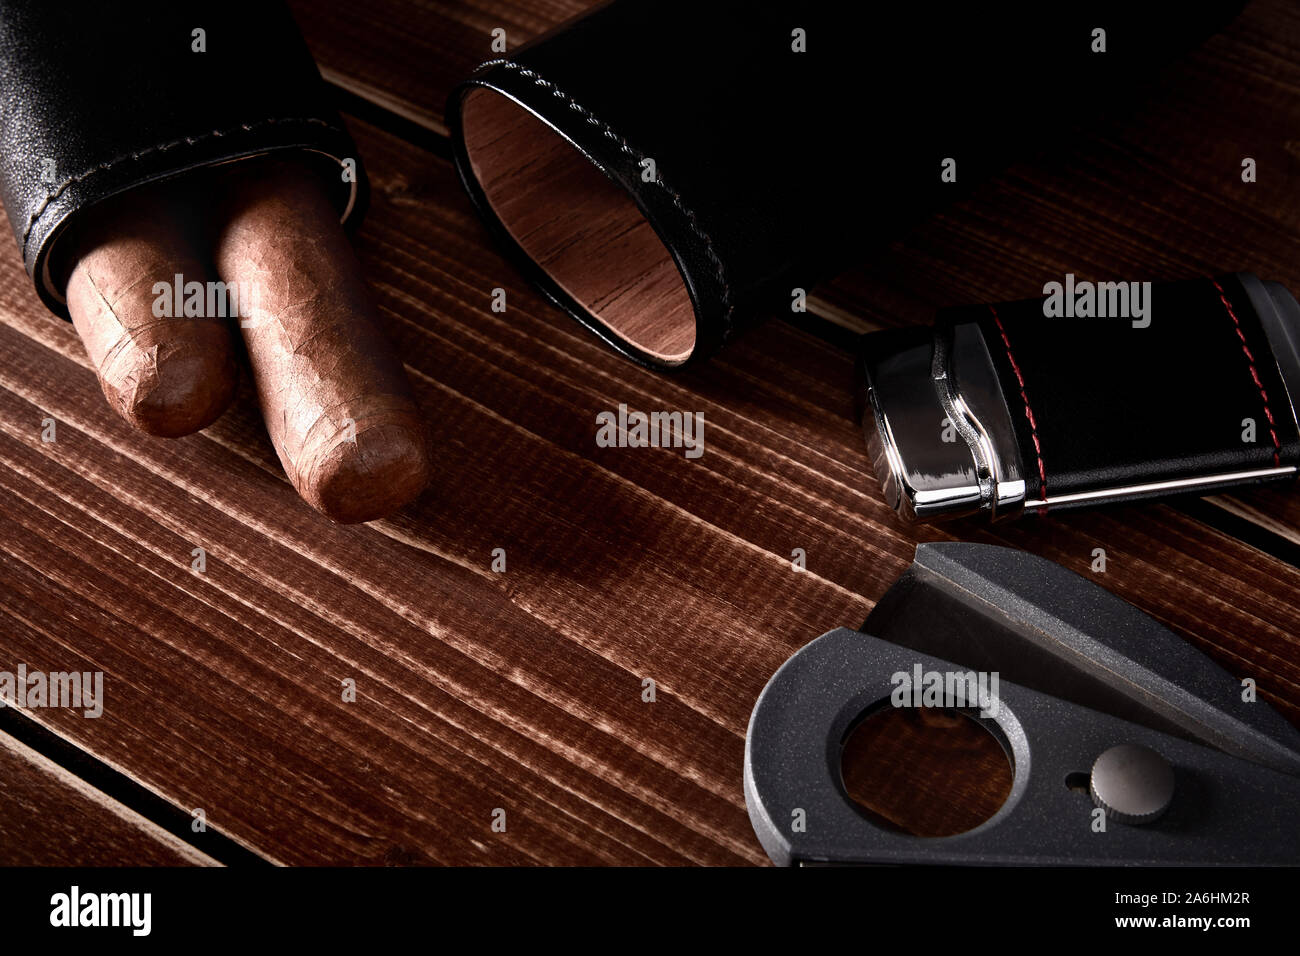 Stillleben mit kubanischen Zigarren in schwarze Ledertasche, Cutter und leichter auf alten hölzernen Tischplatte mit Platz für Text Stockfoto